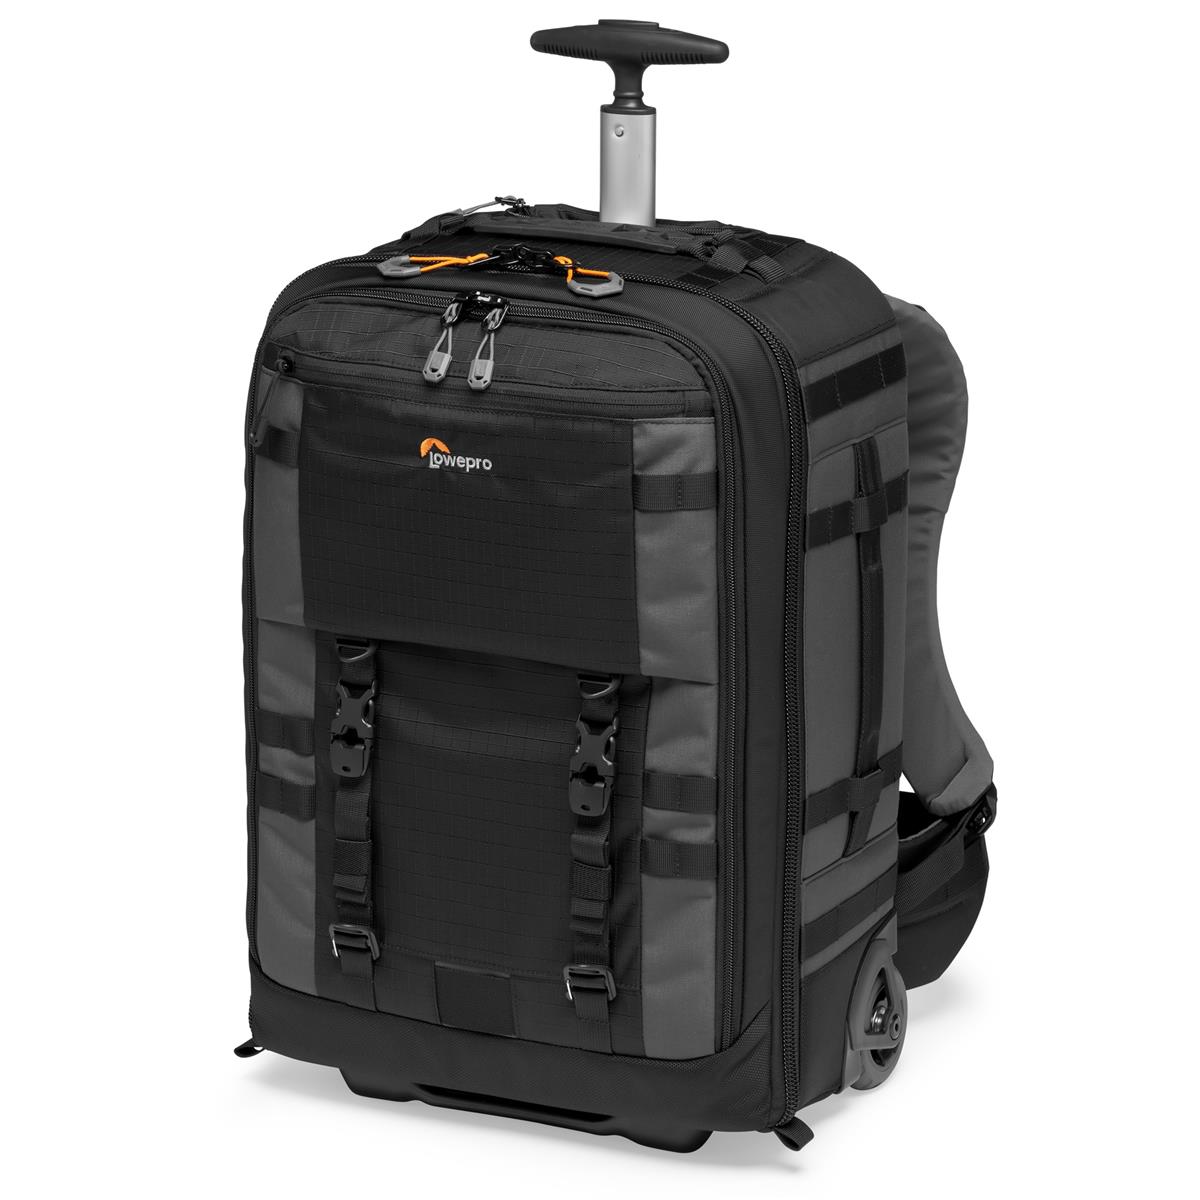 Lowepro Pro Trekker RLX 450 AW II Backpack